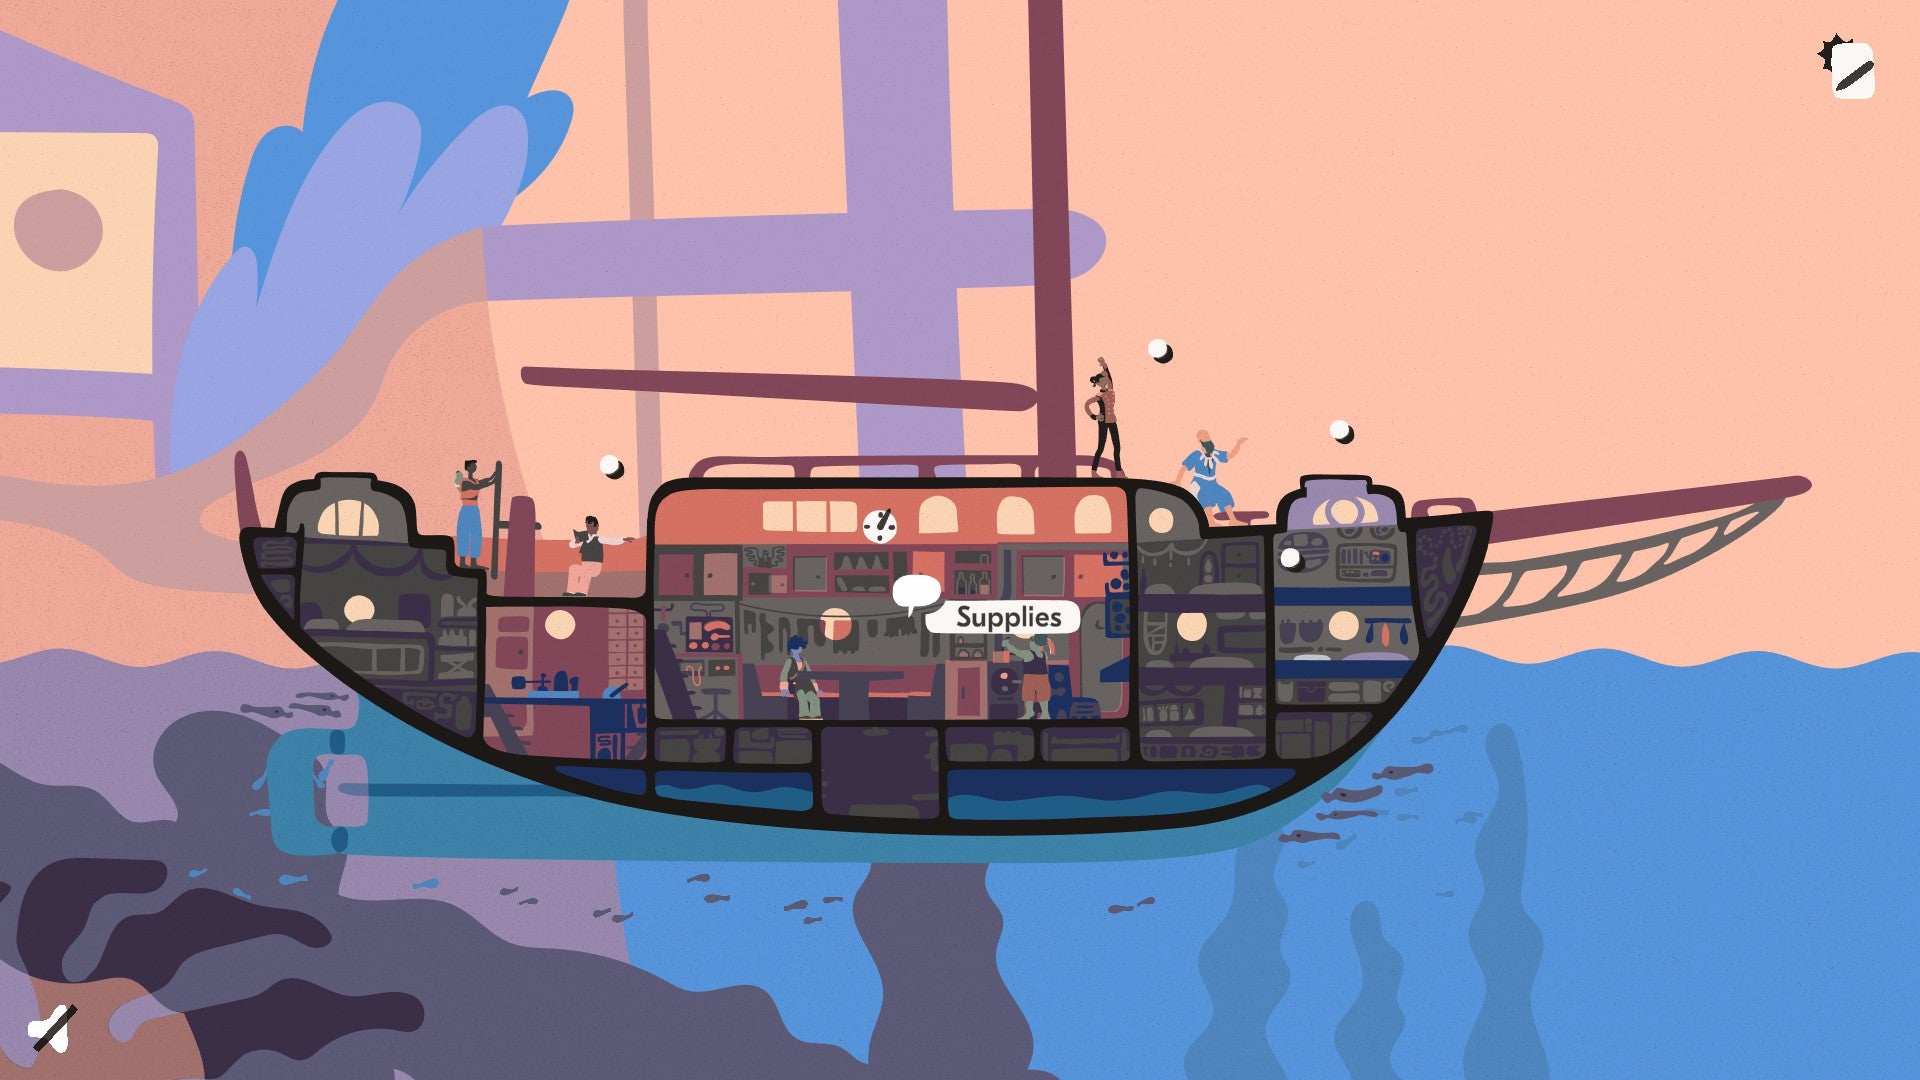 《盐海编年史》之船内剖面图显示了几间船舱。选中的一个船舱上写着“补给”